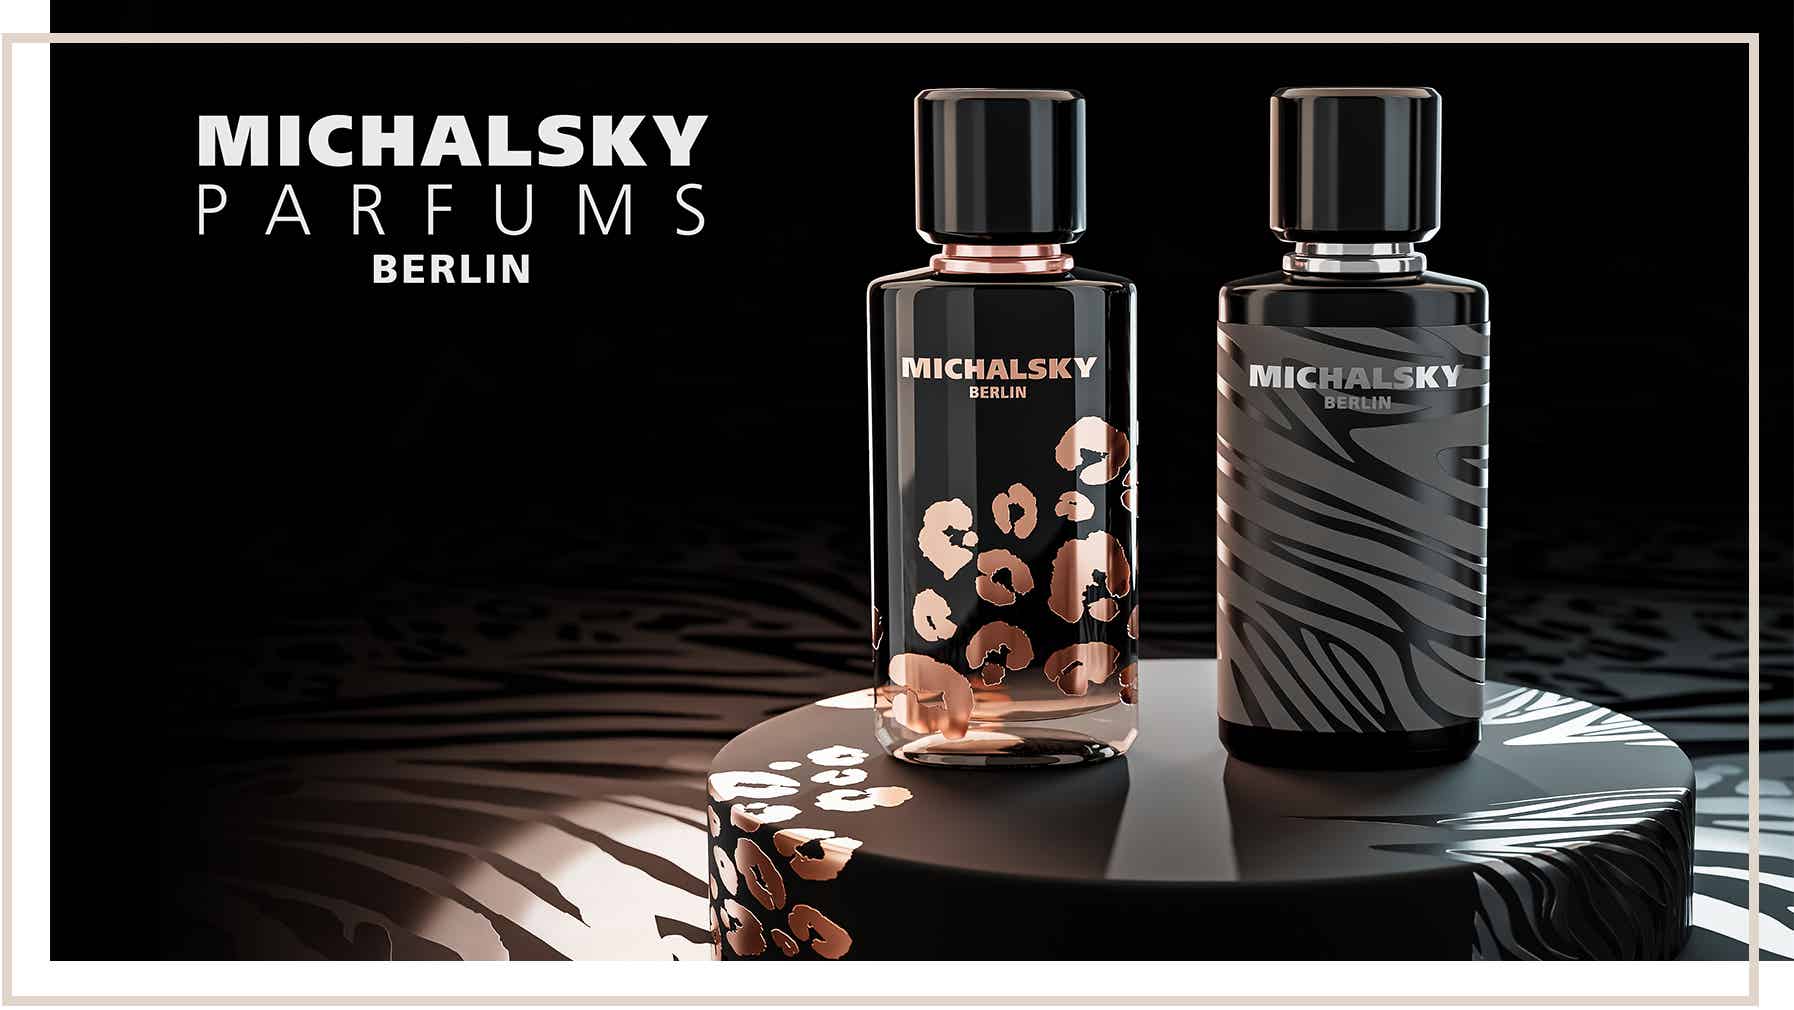 Op zoek naar Michalsky Berlin parfum? Michalsky Berlin parfum vind je bij Duitse Voordeel drogist dm online drogist rossmann mueller goedkoop snel verzonden